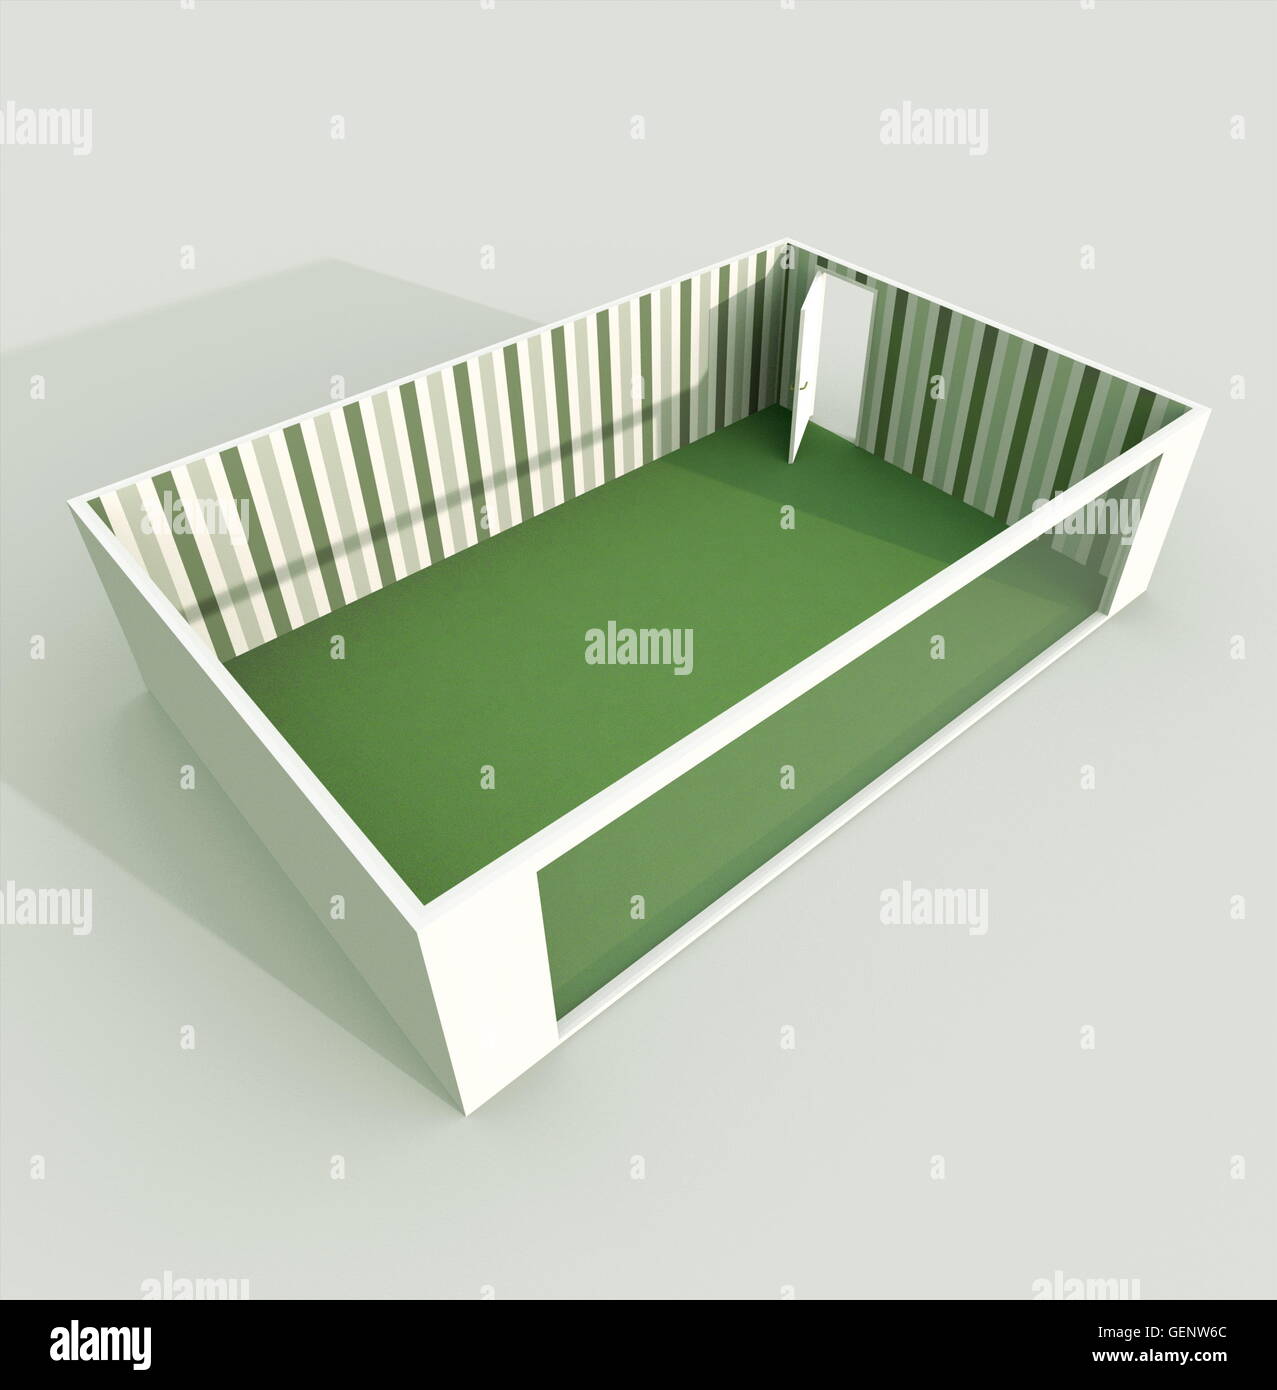 Le rendu 3D Intérieur vue perspective de salle vide appartement avec sol matière verte et papier peint à rayures Banque D'Images